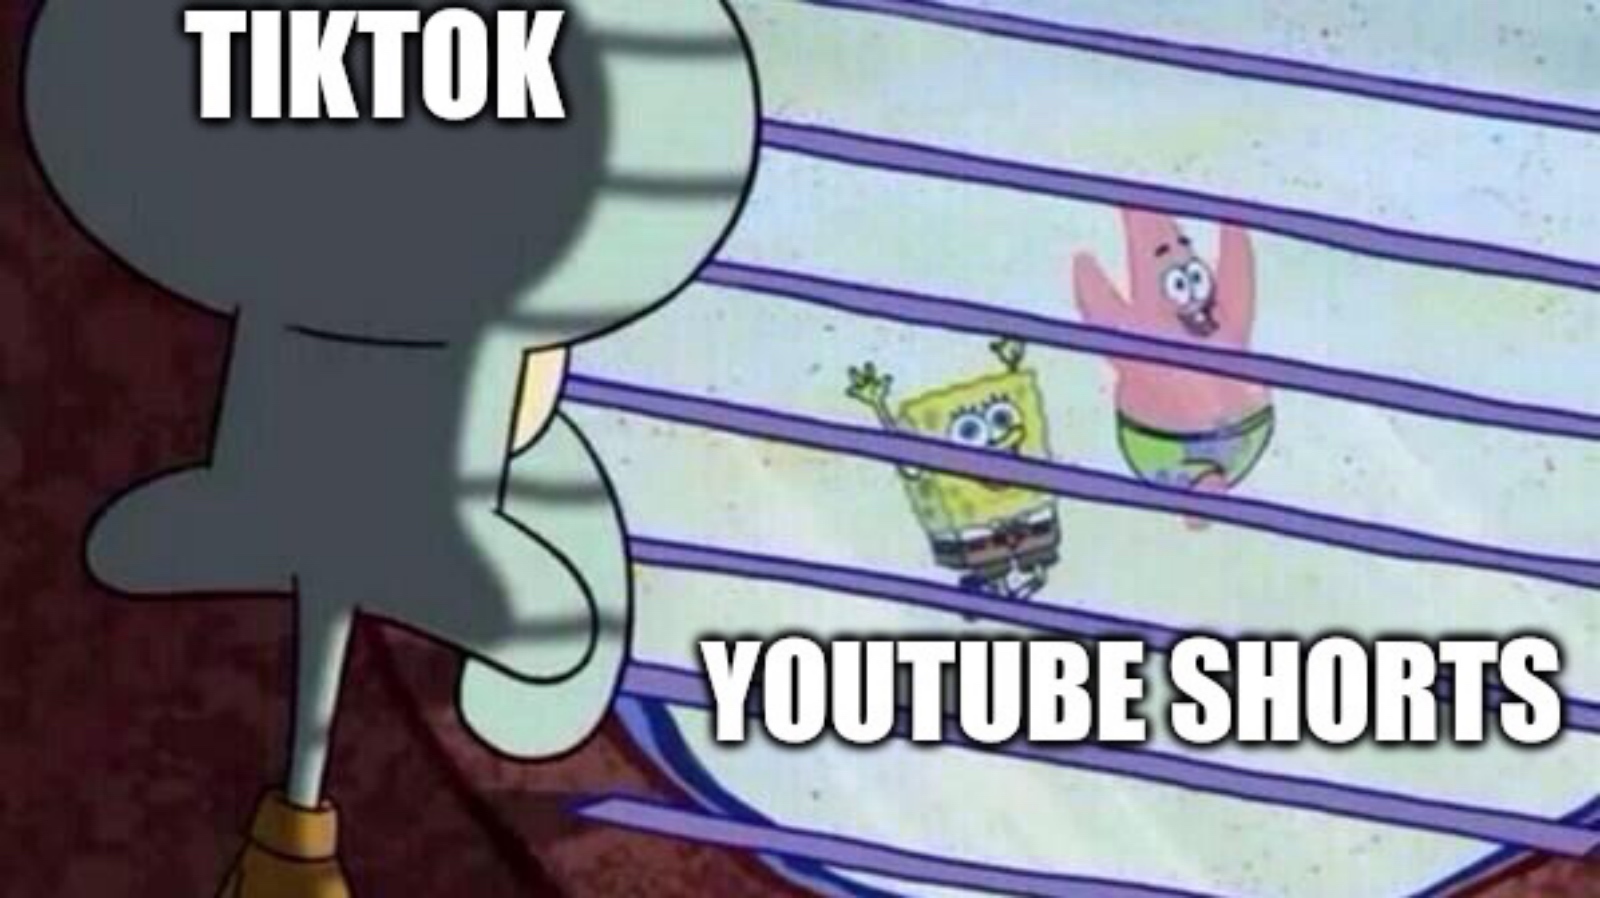 TikTok vs YouTube Shorts meme